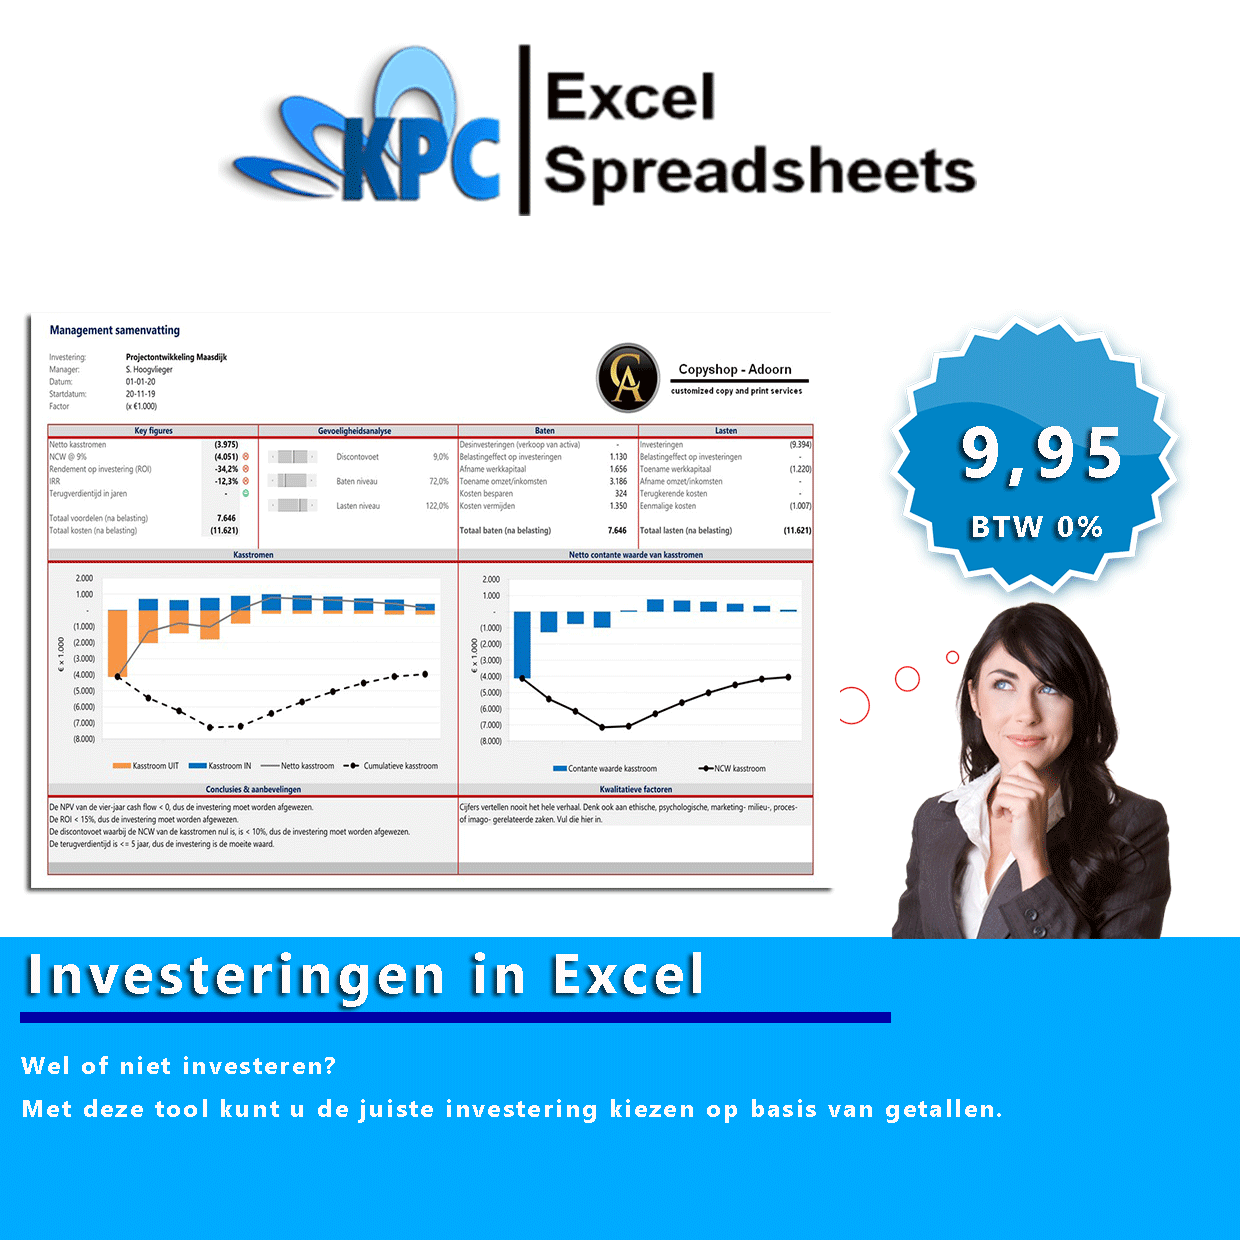 Investeringen in Excel